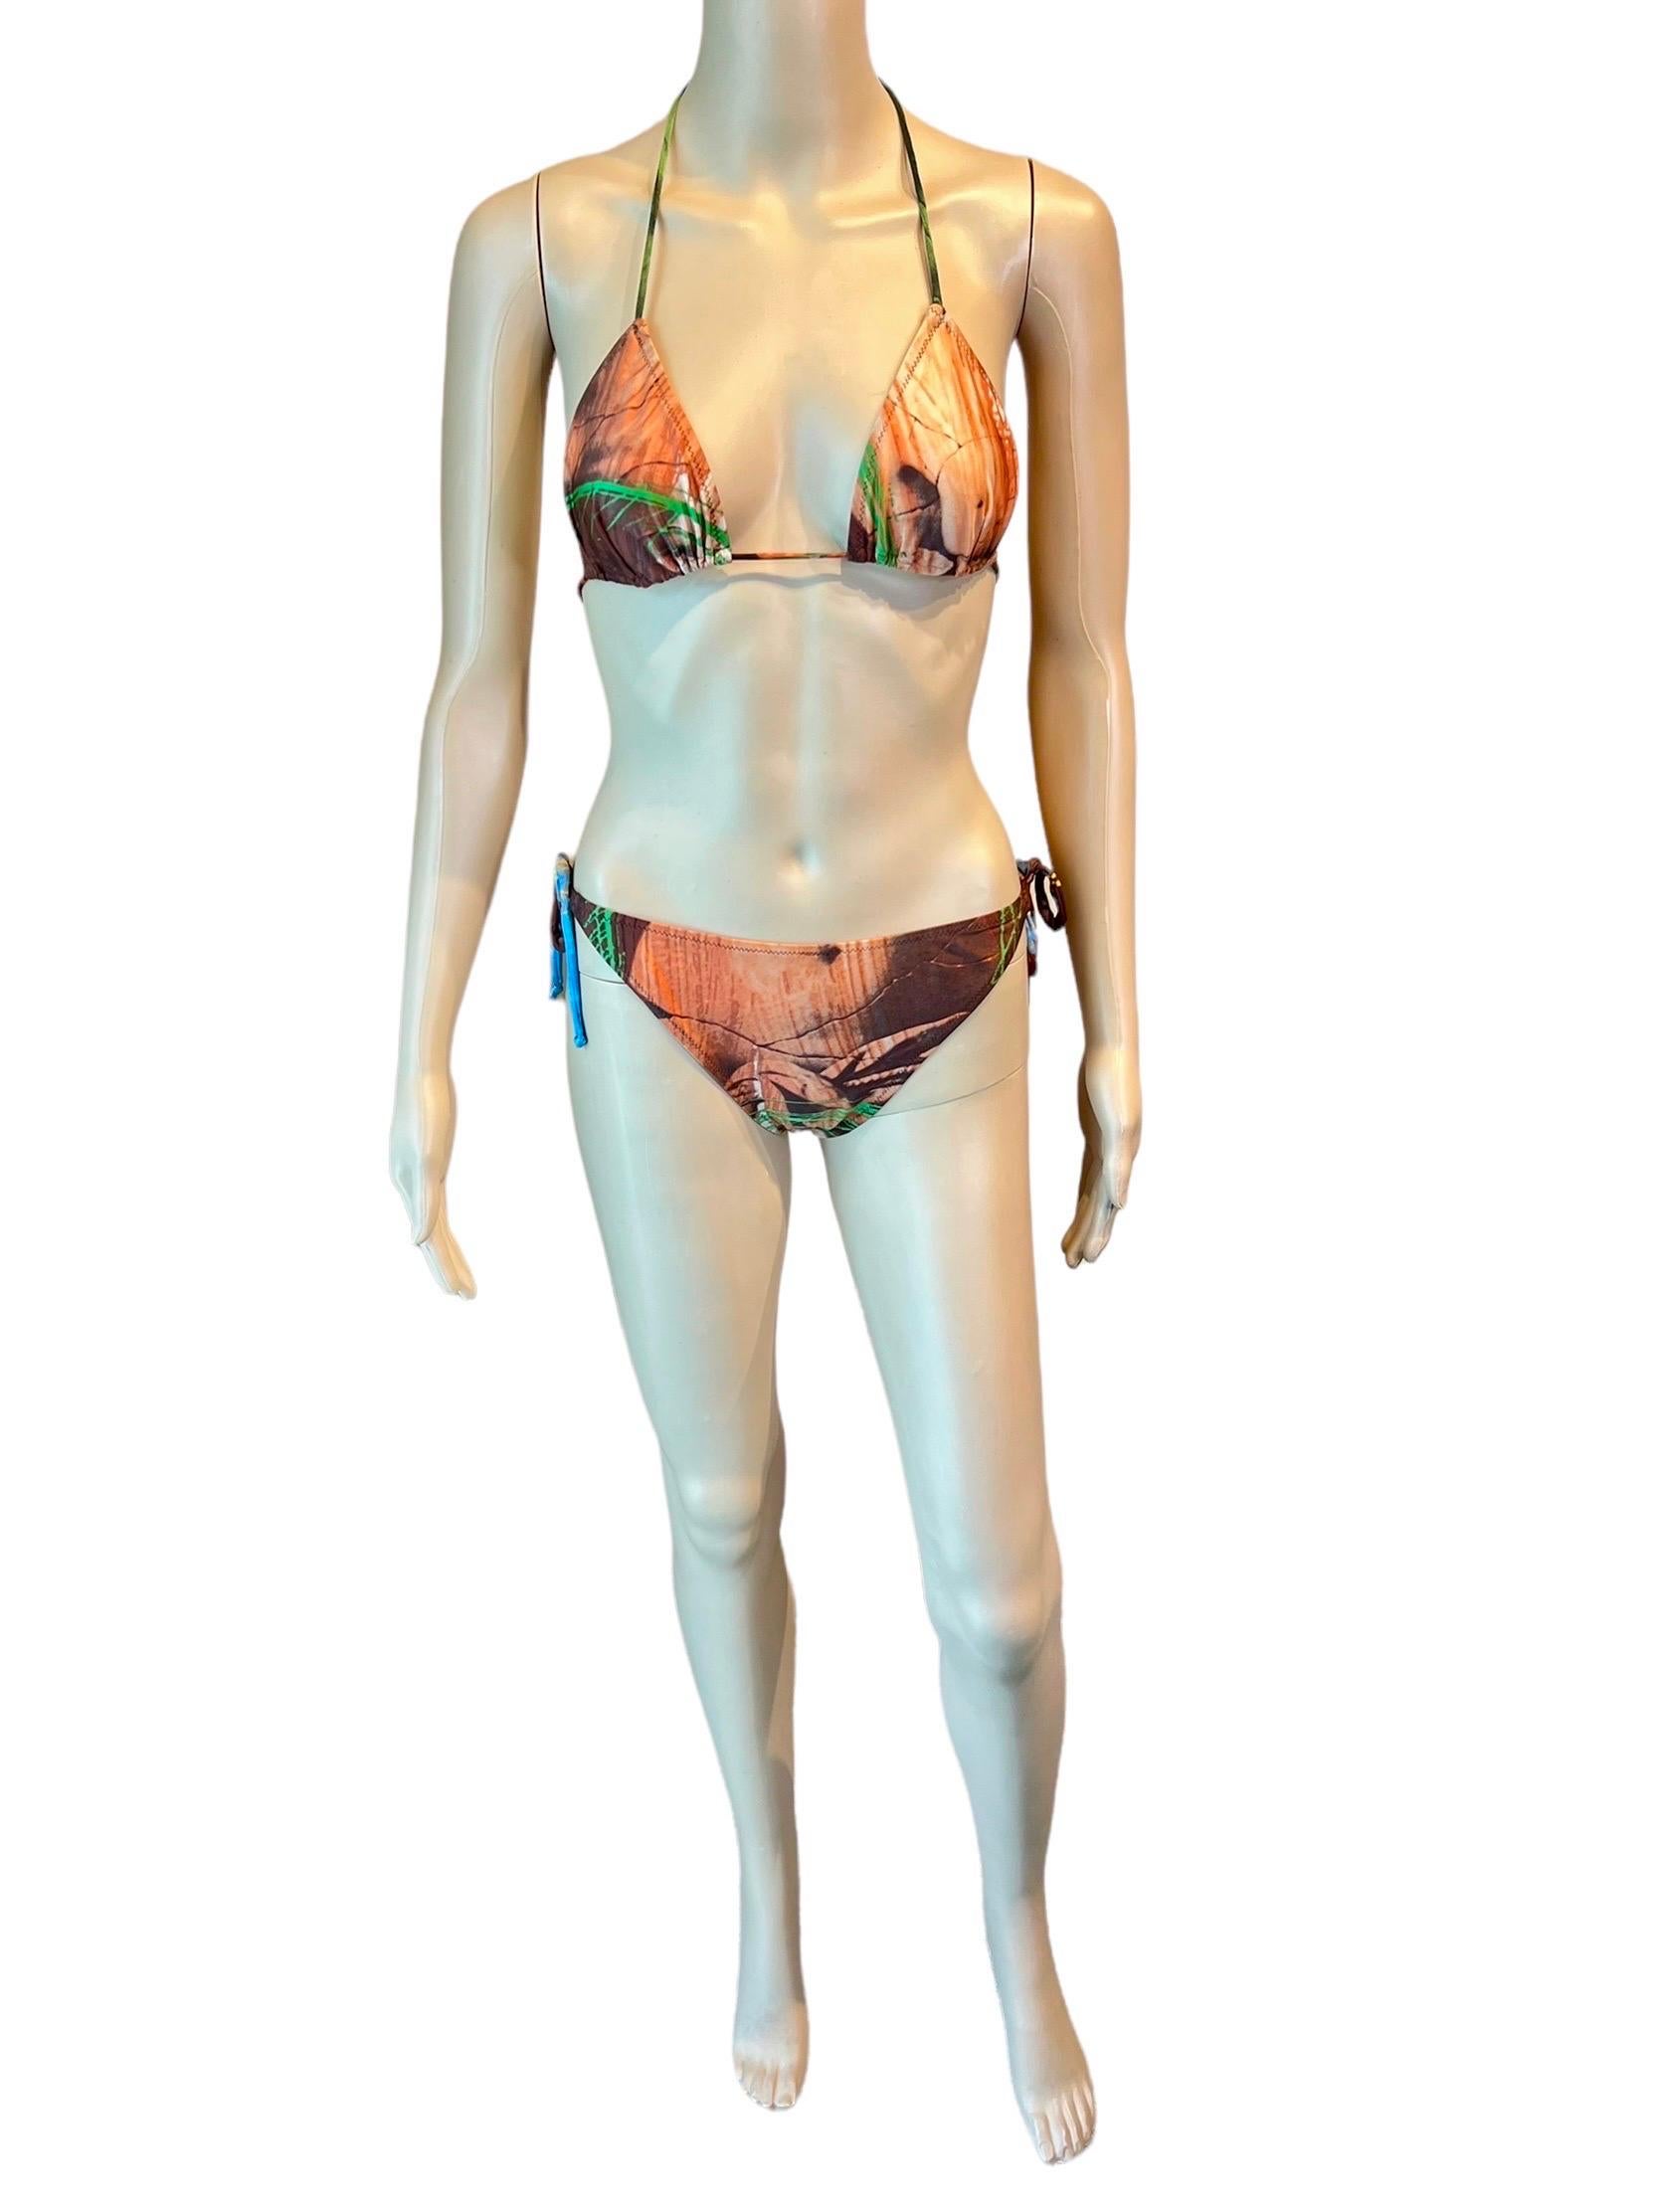 Jean Paul Gaultier S/S 1999 Venus de Milo Bikini Swimwear Swimsuit 2 Piece Set 2